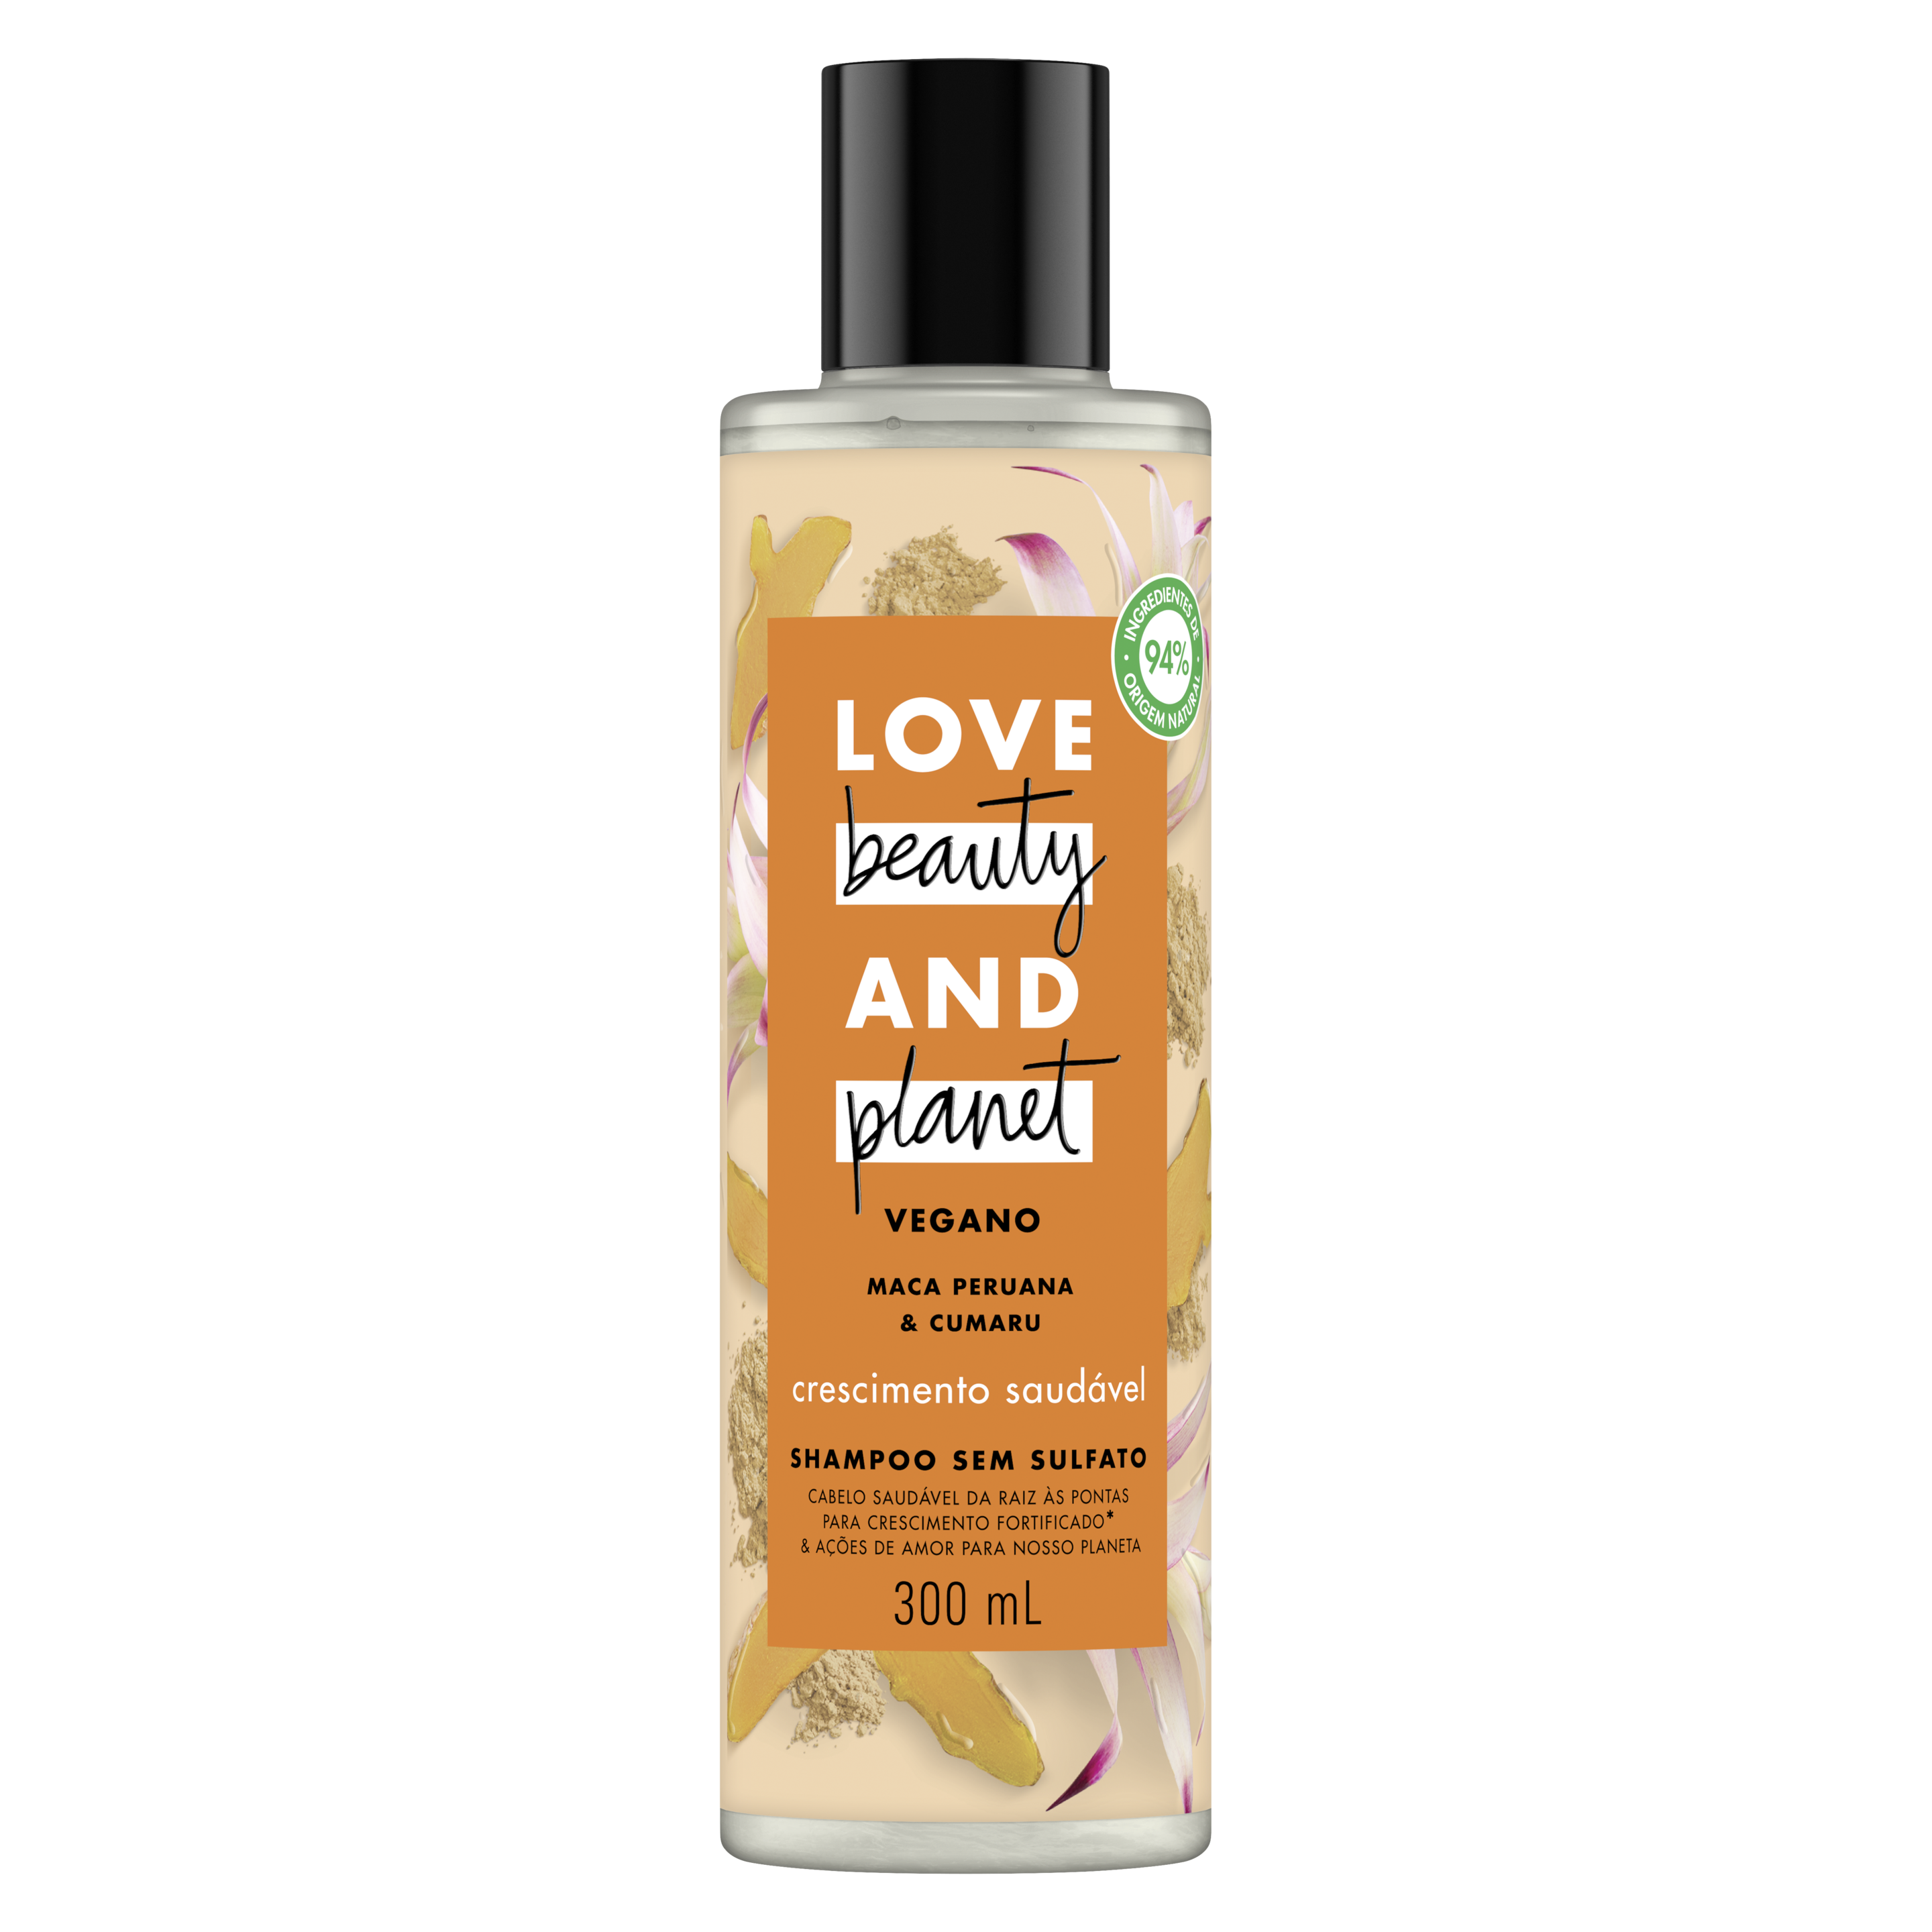 Frente da embalagem do shampoo Love Beauty and Planet maca peruana e cumaru 300 ml Text